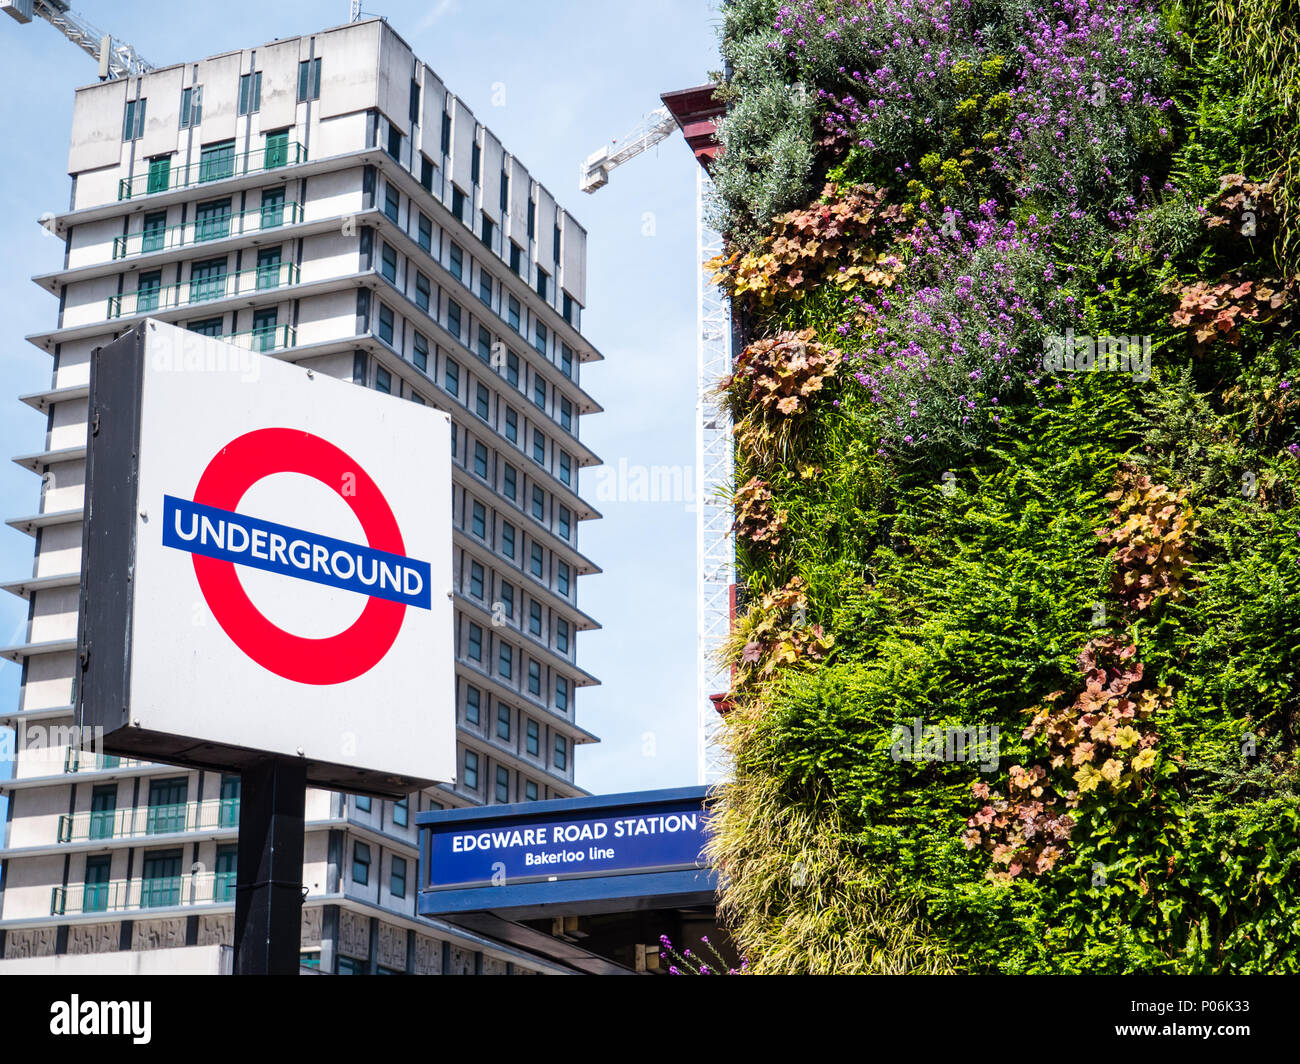 La estación de metro Edgware Road de Londres, con paredes verdes para reducir la contaminación del aire, Londres, Inglaterra, Reino Unido, GB. Foto de stock